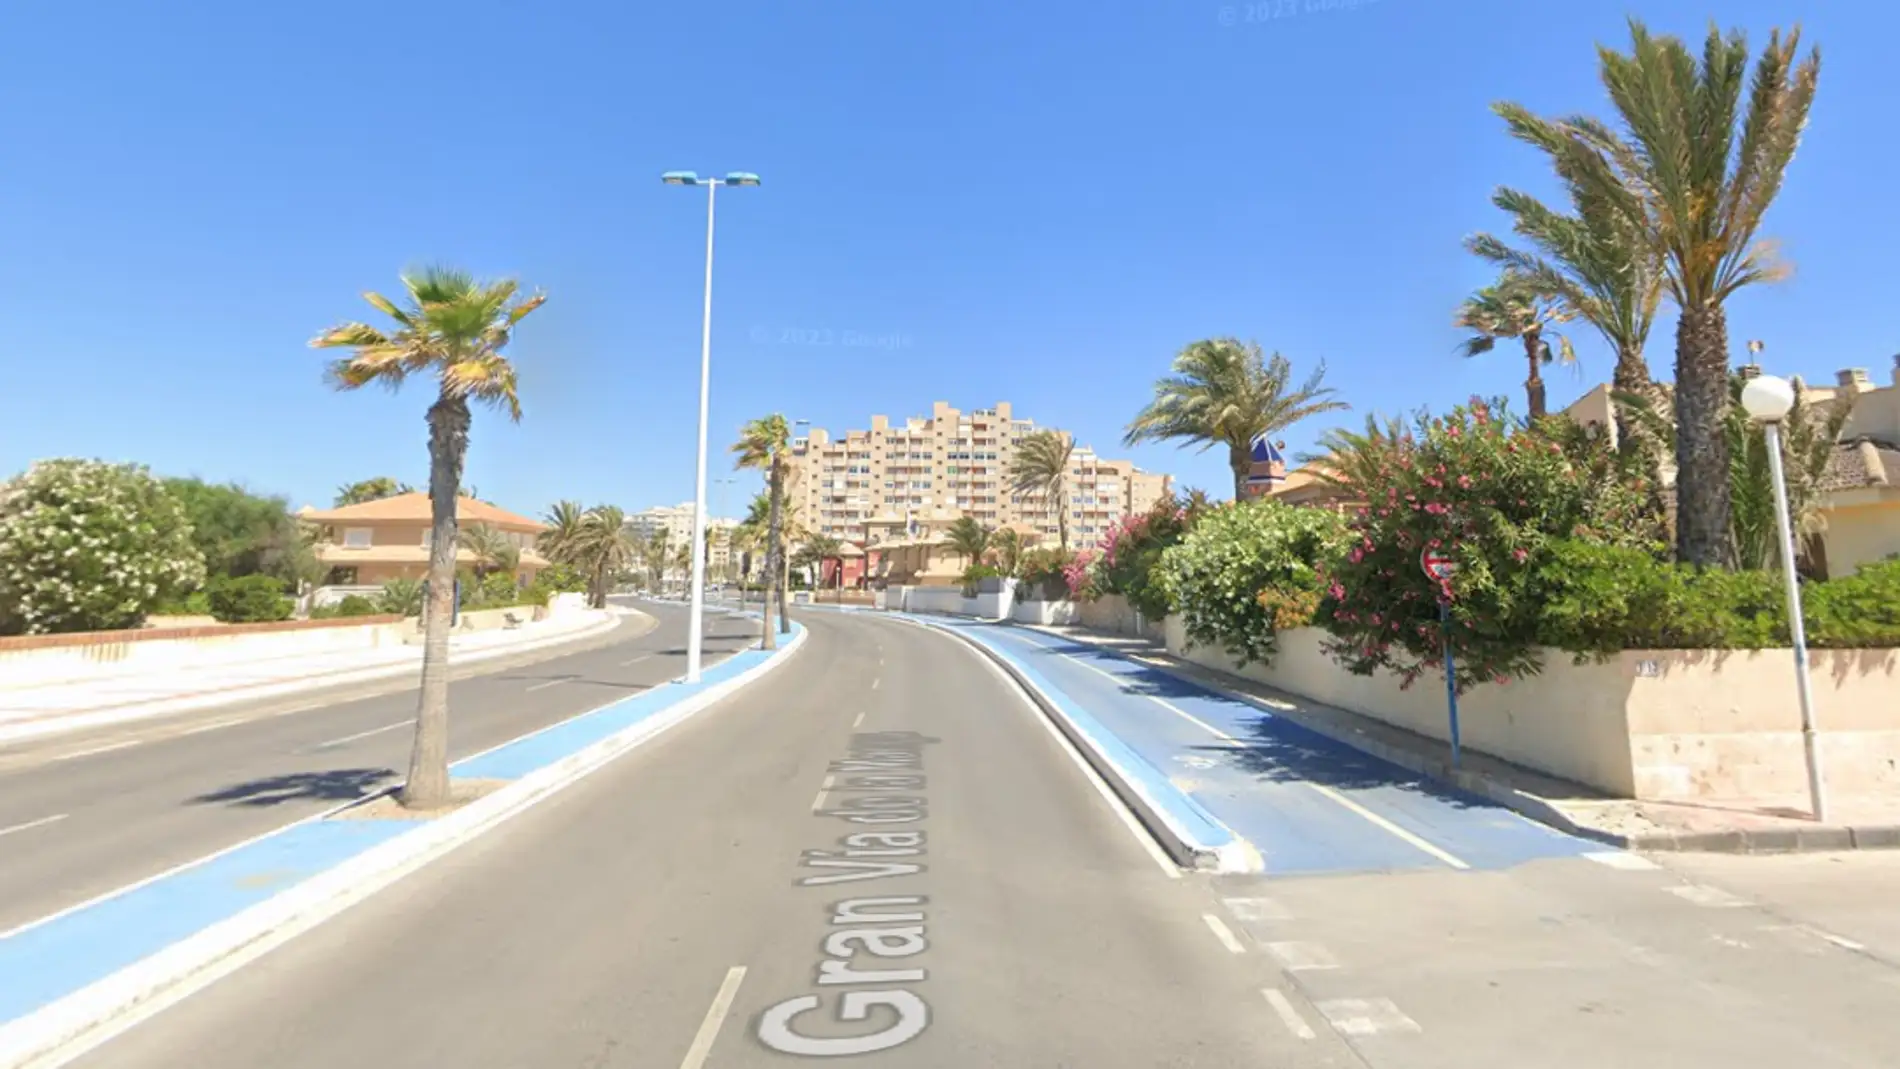 Calle Gran Vía de La Manga del Mar Menor (Murcia)